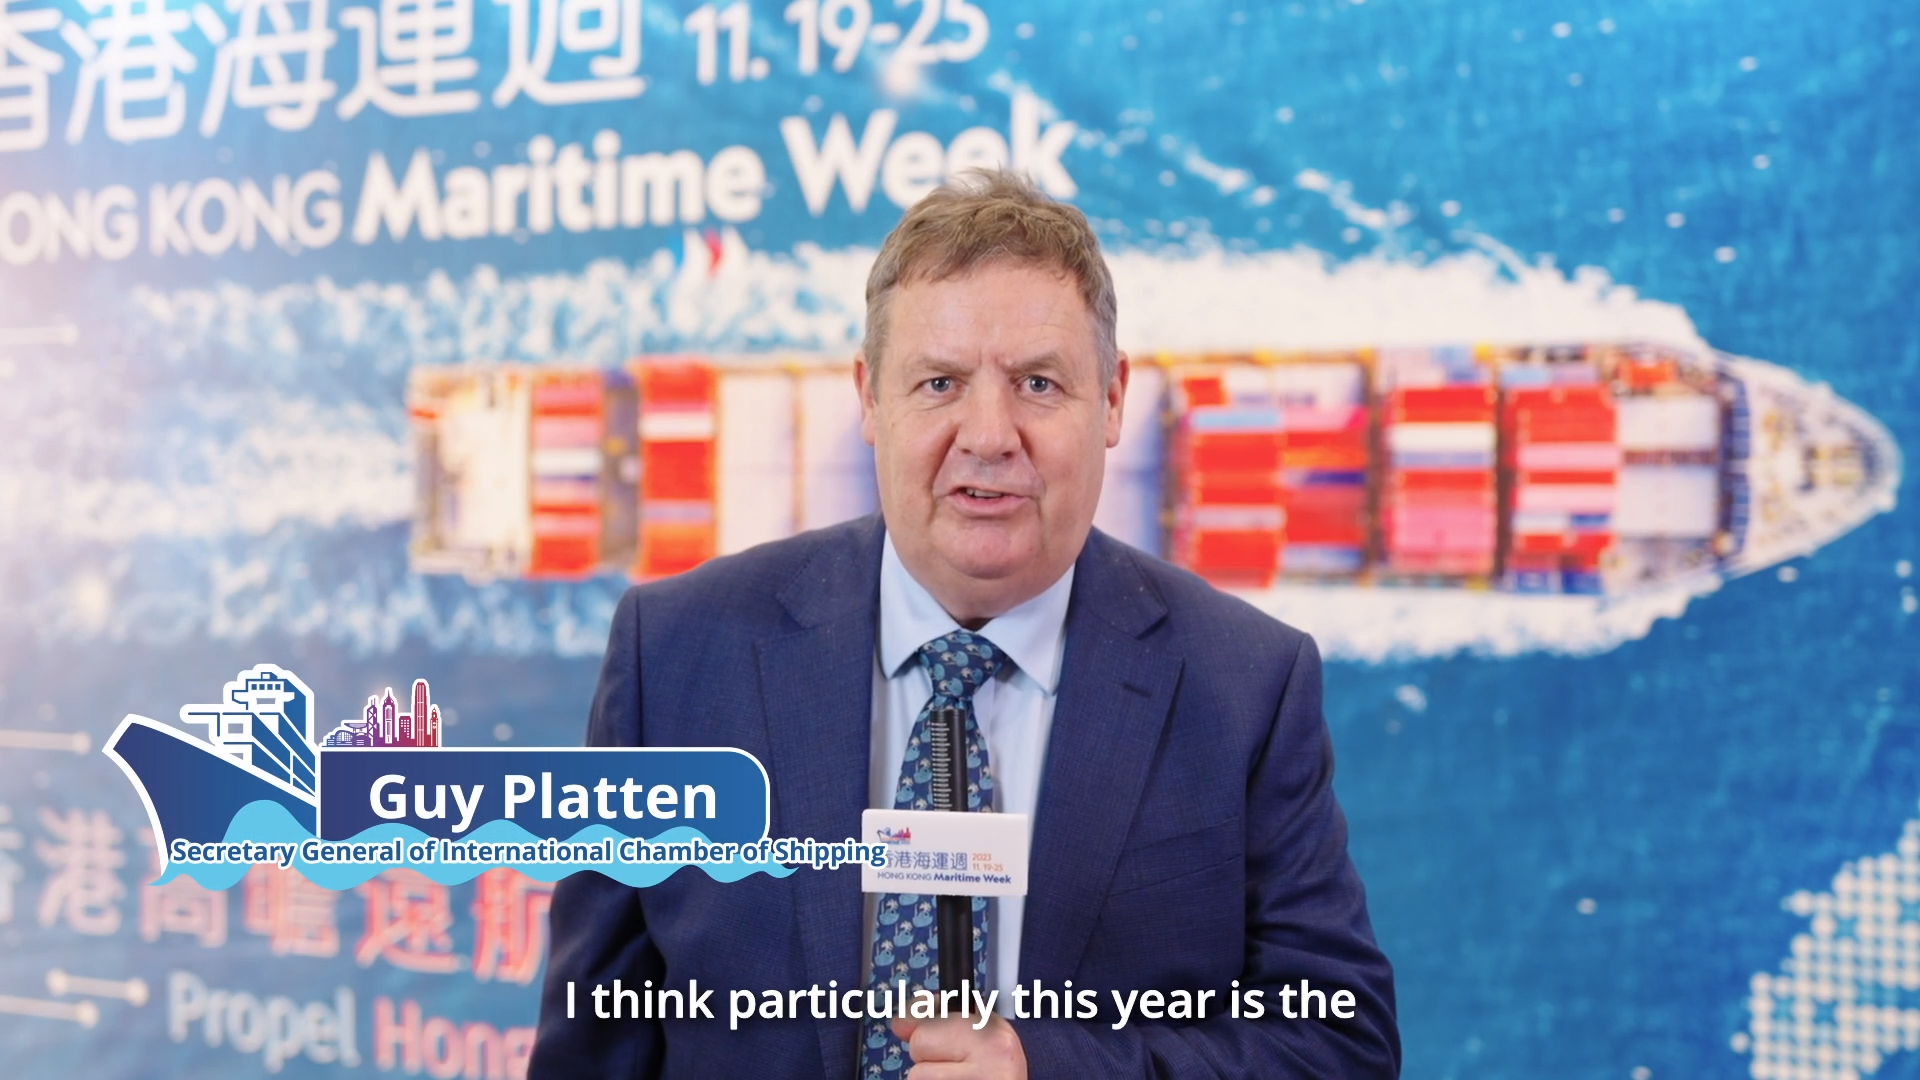 香港海运周2023 - 国际航运公会秘书长Guy Platten先生 (只有英文)